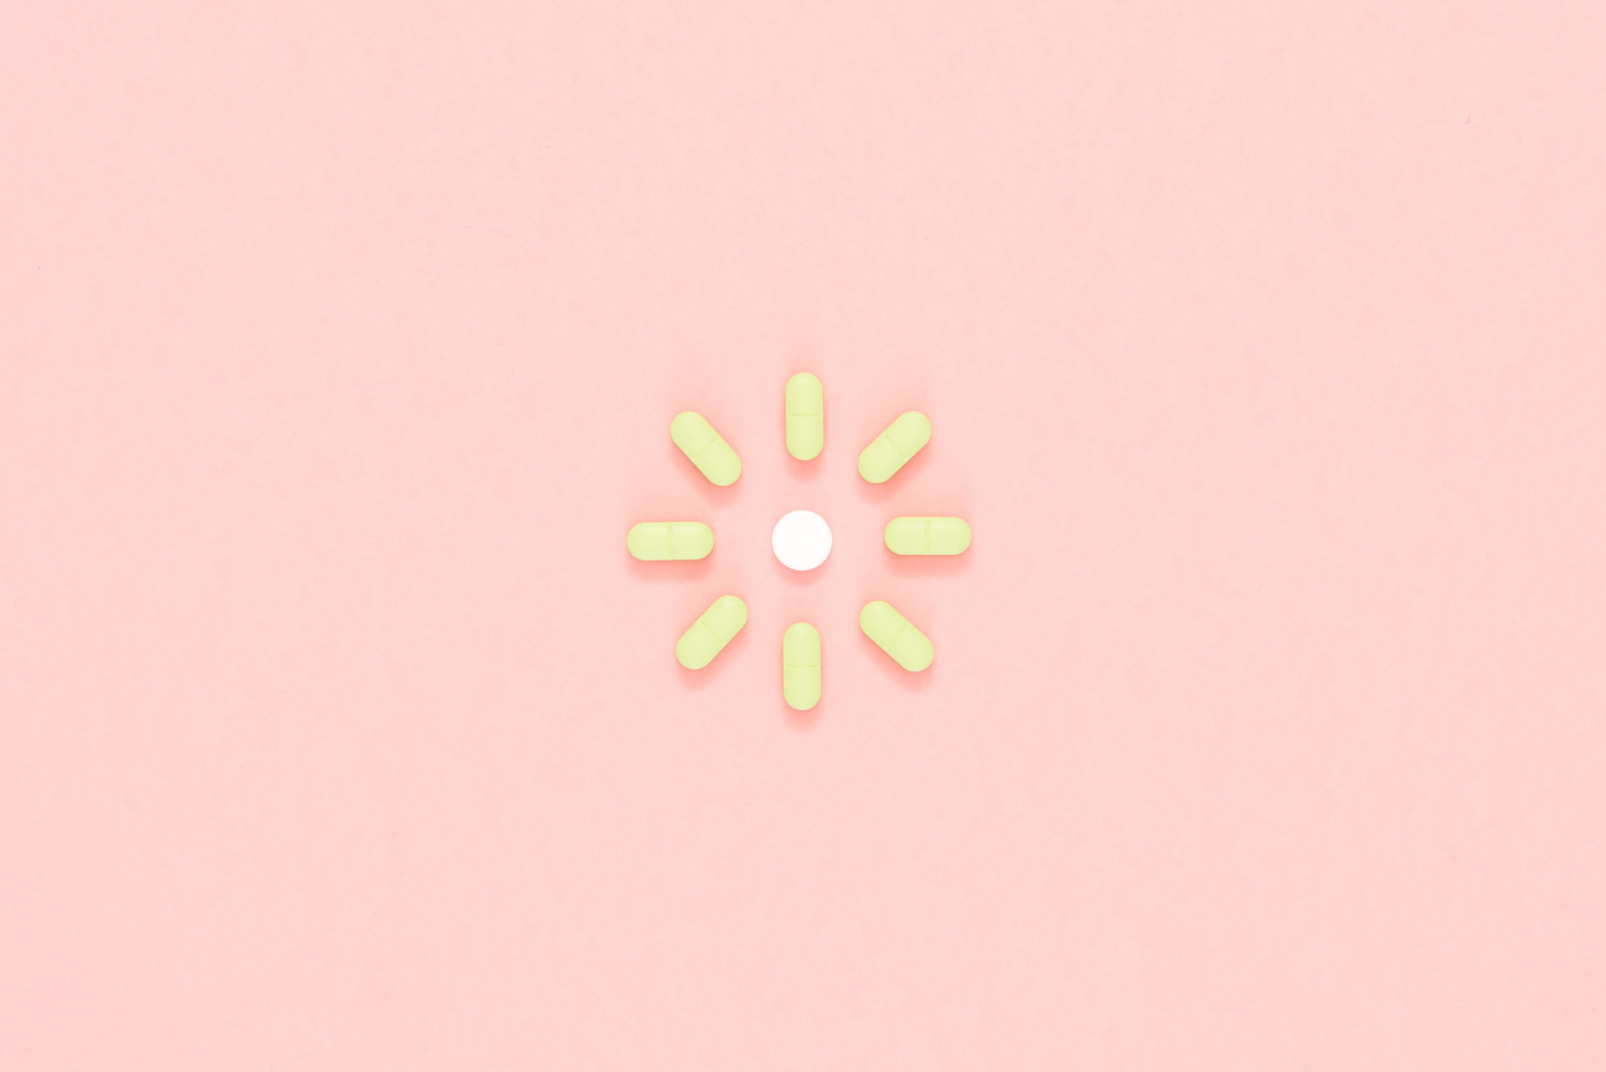 Green pills arranged in a shape of sun